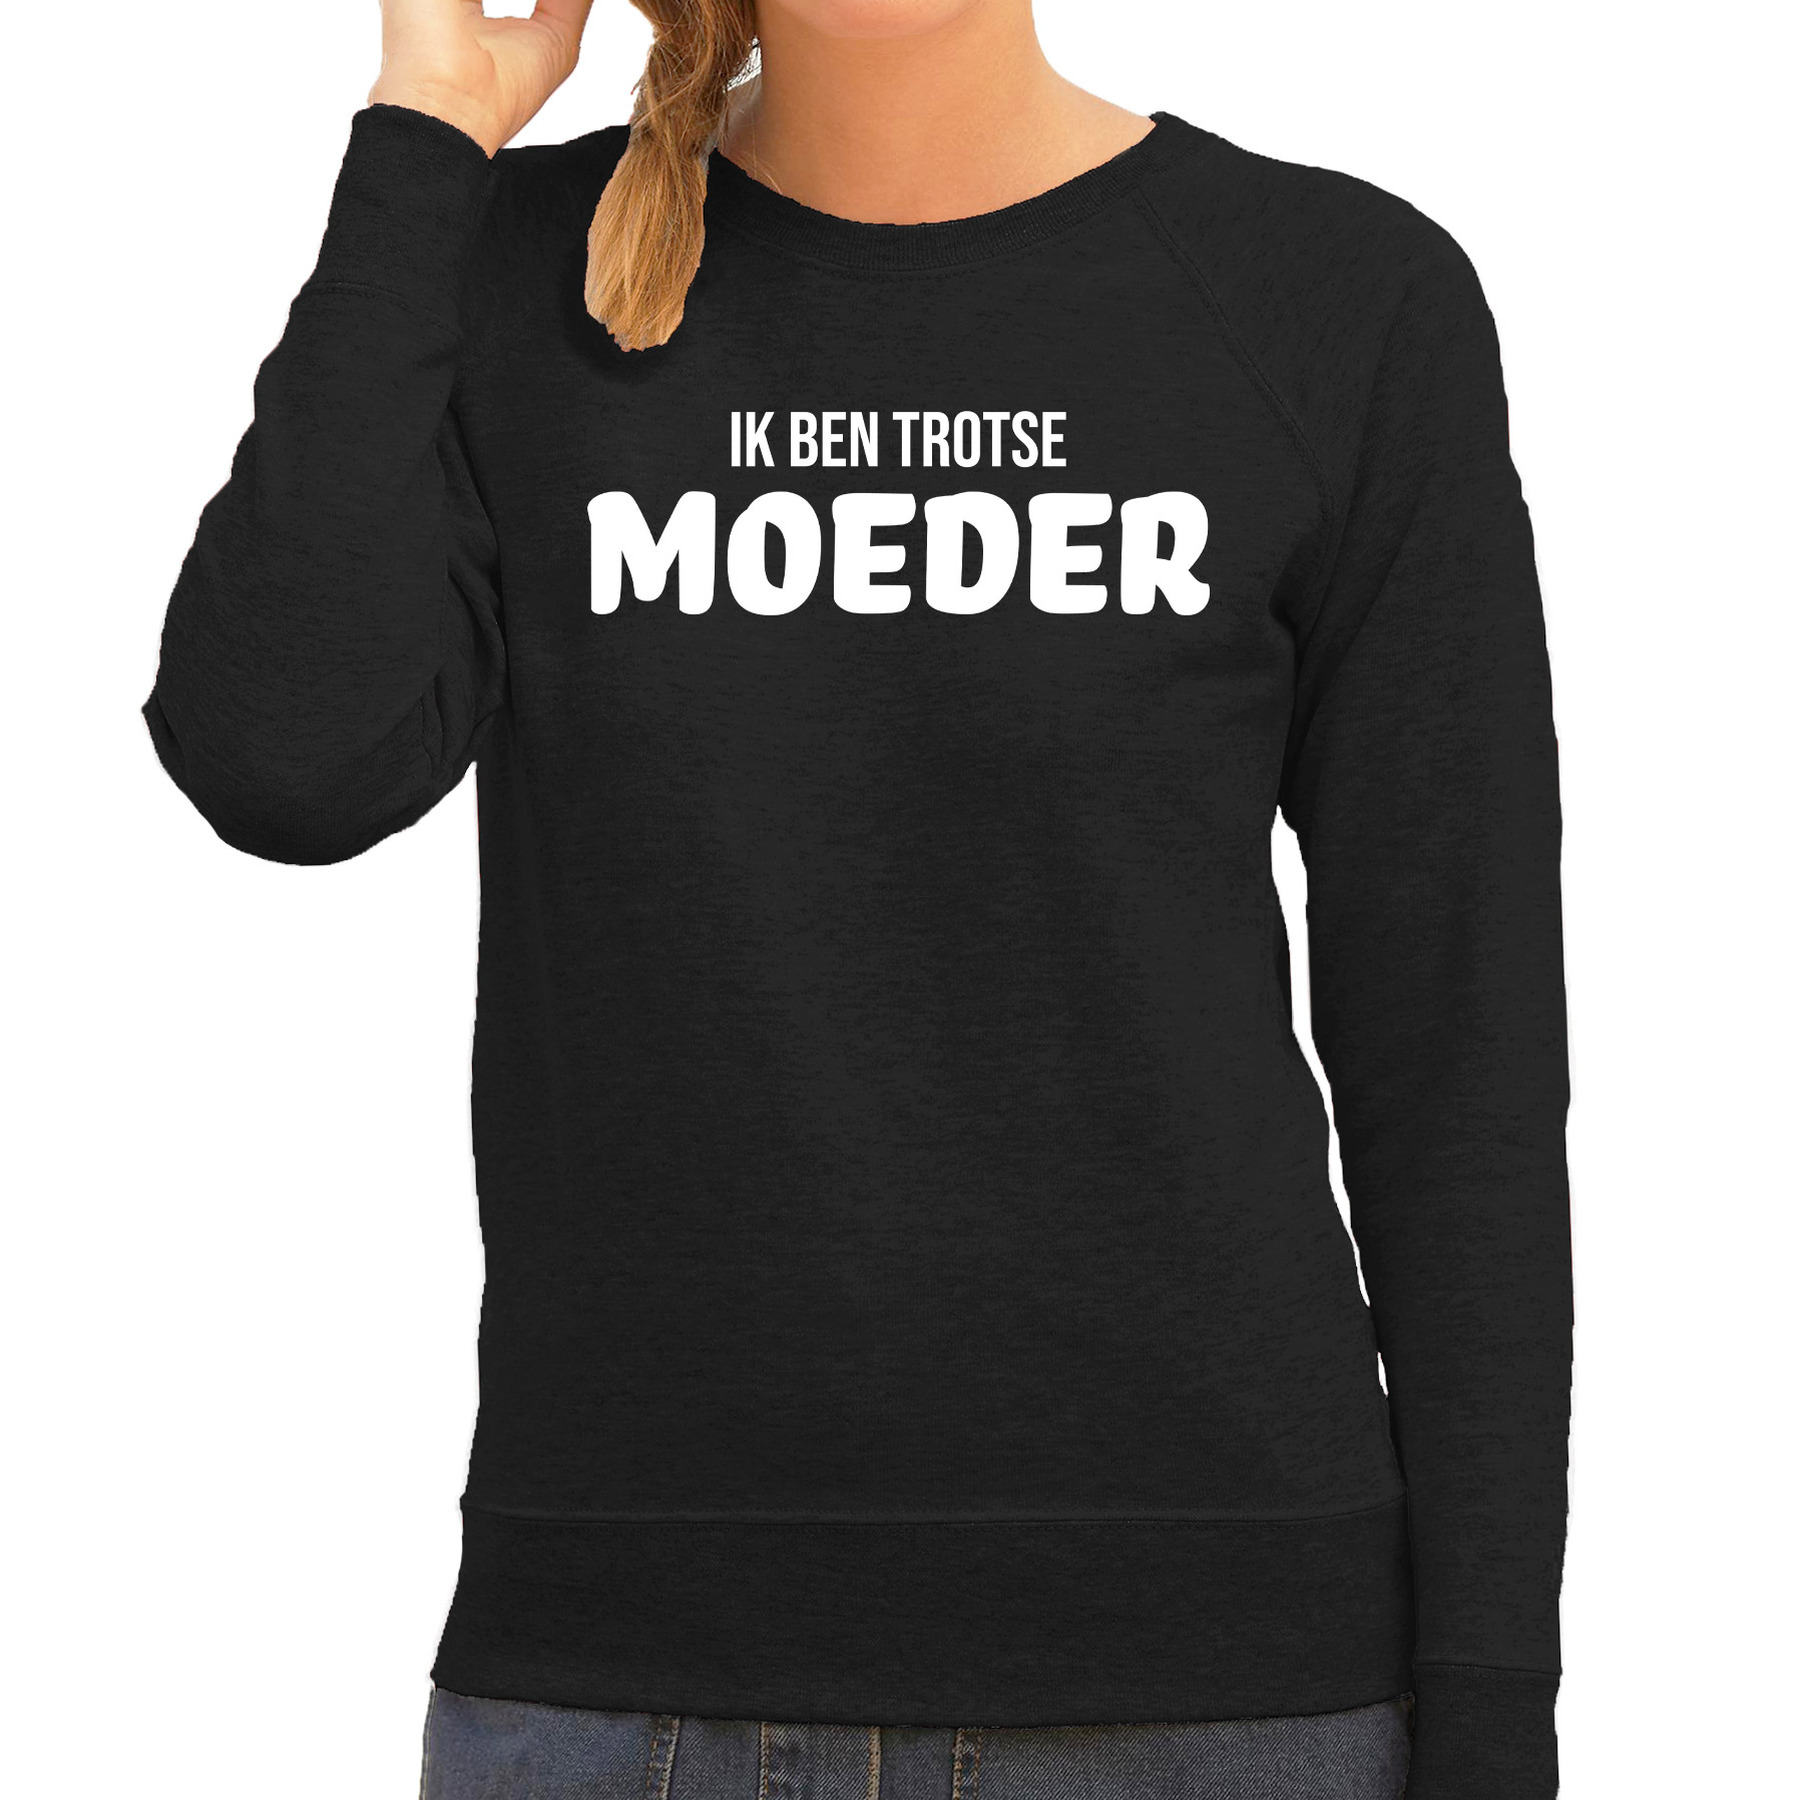 Ik ben trotse moeder sweater-trui zwart voor dames moederdag cadeau truien mama